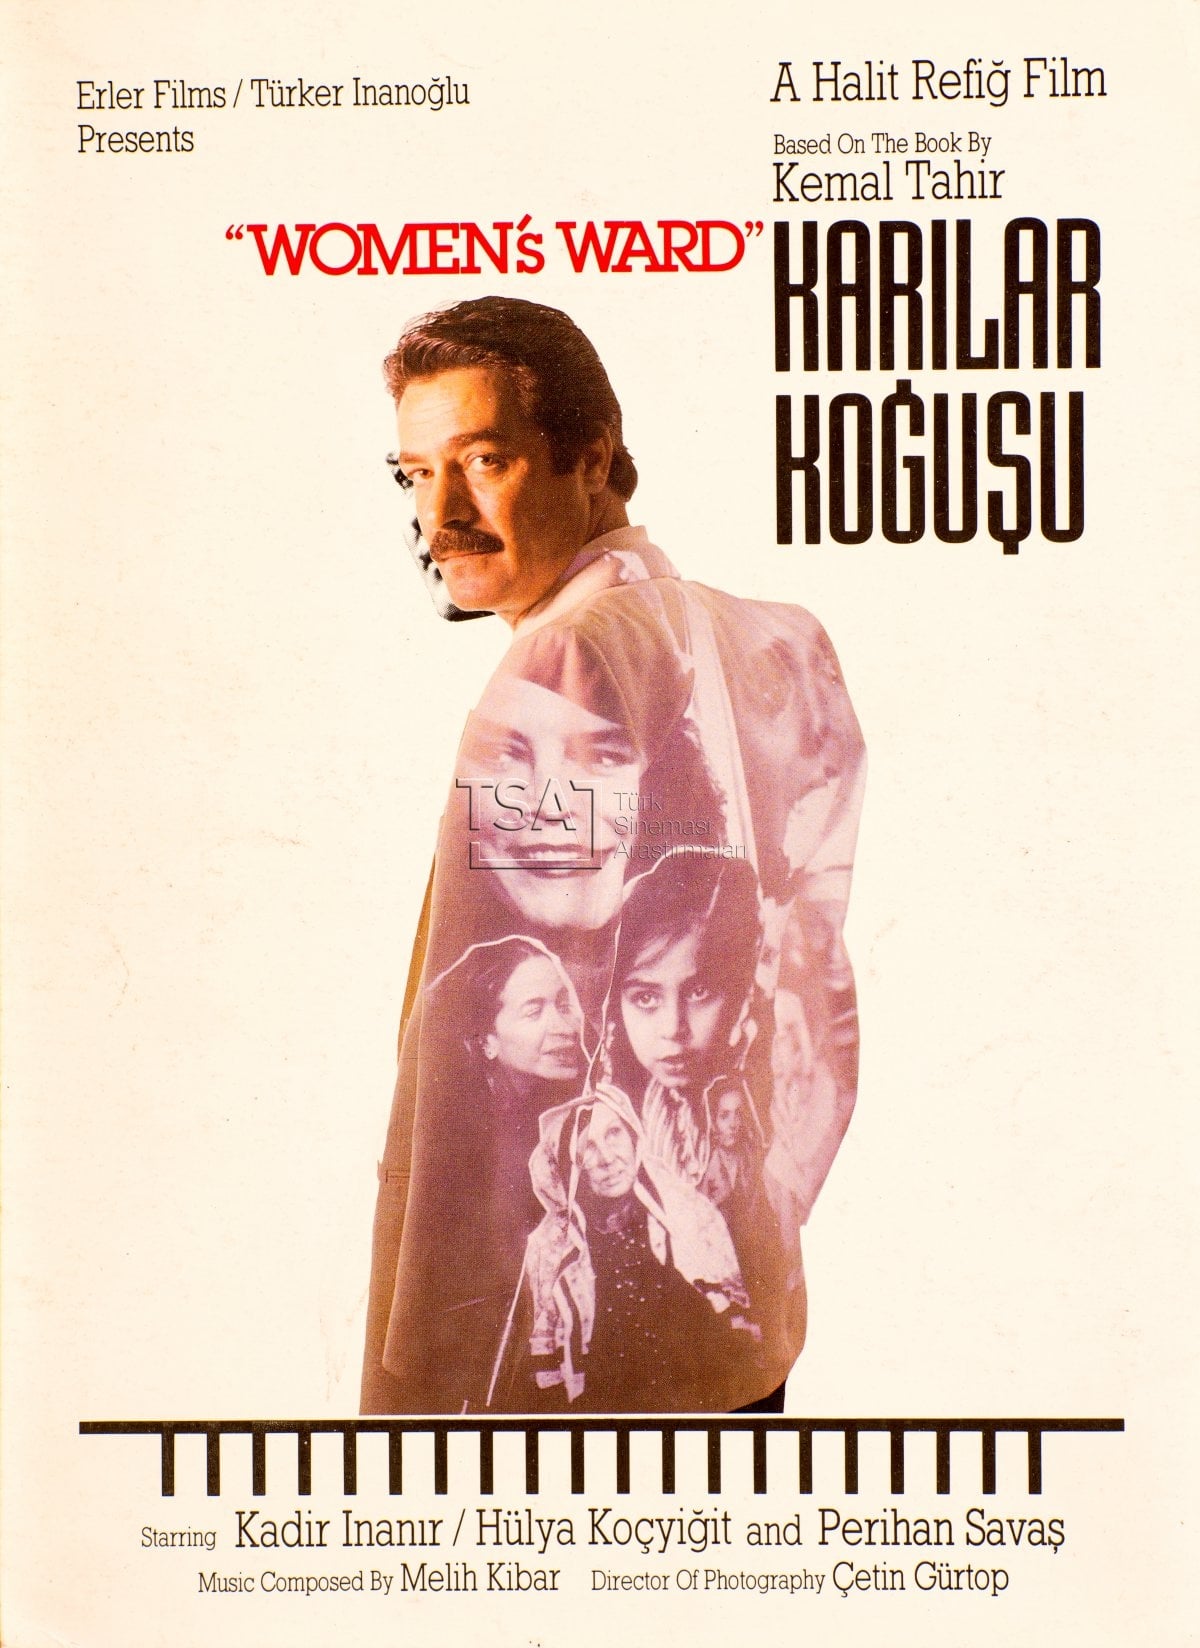 Karilar Kogusu (1990) постер